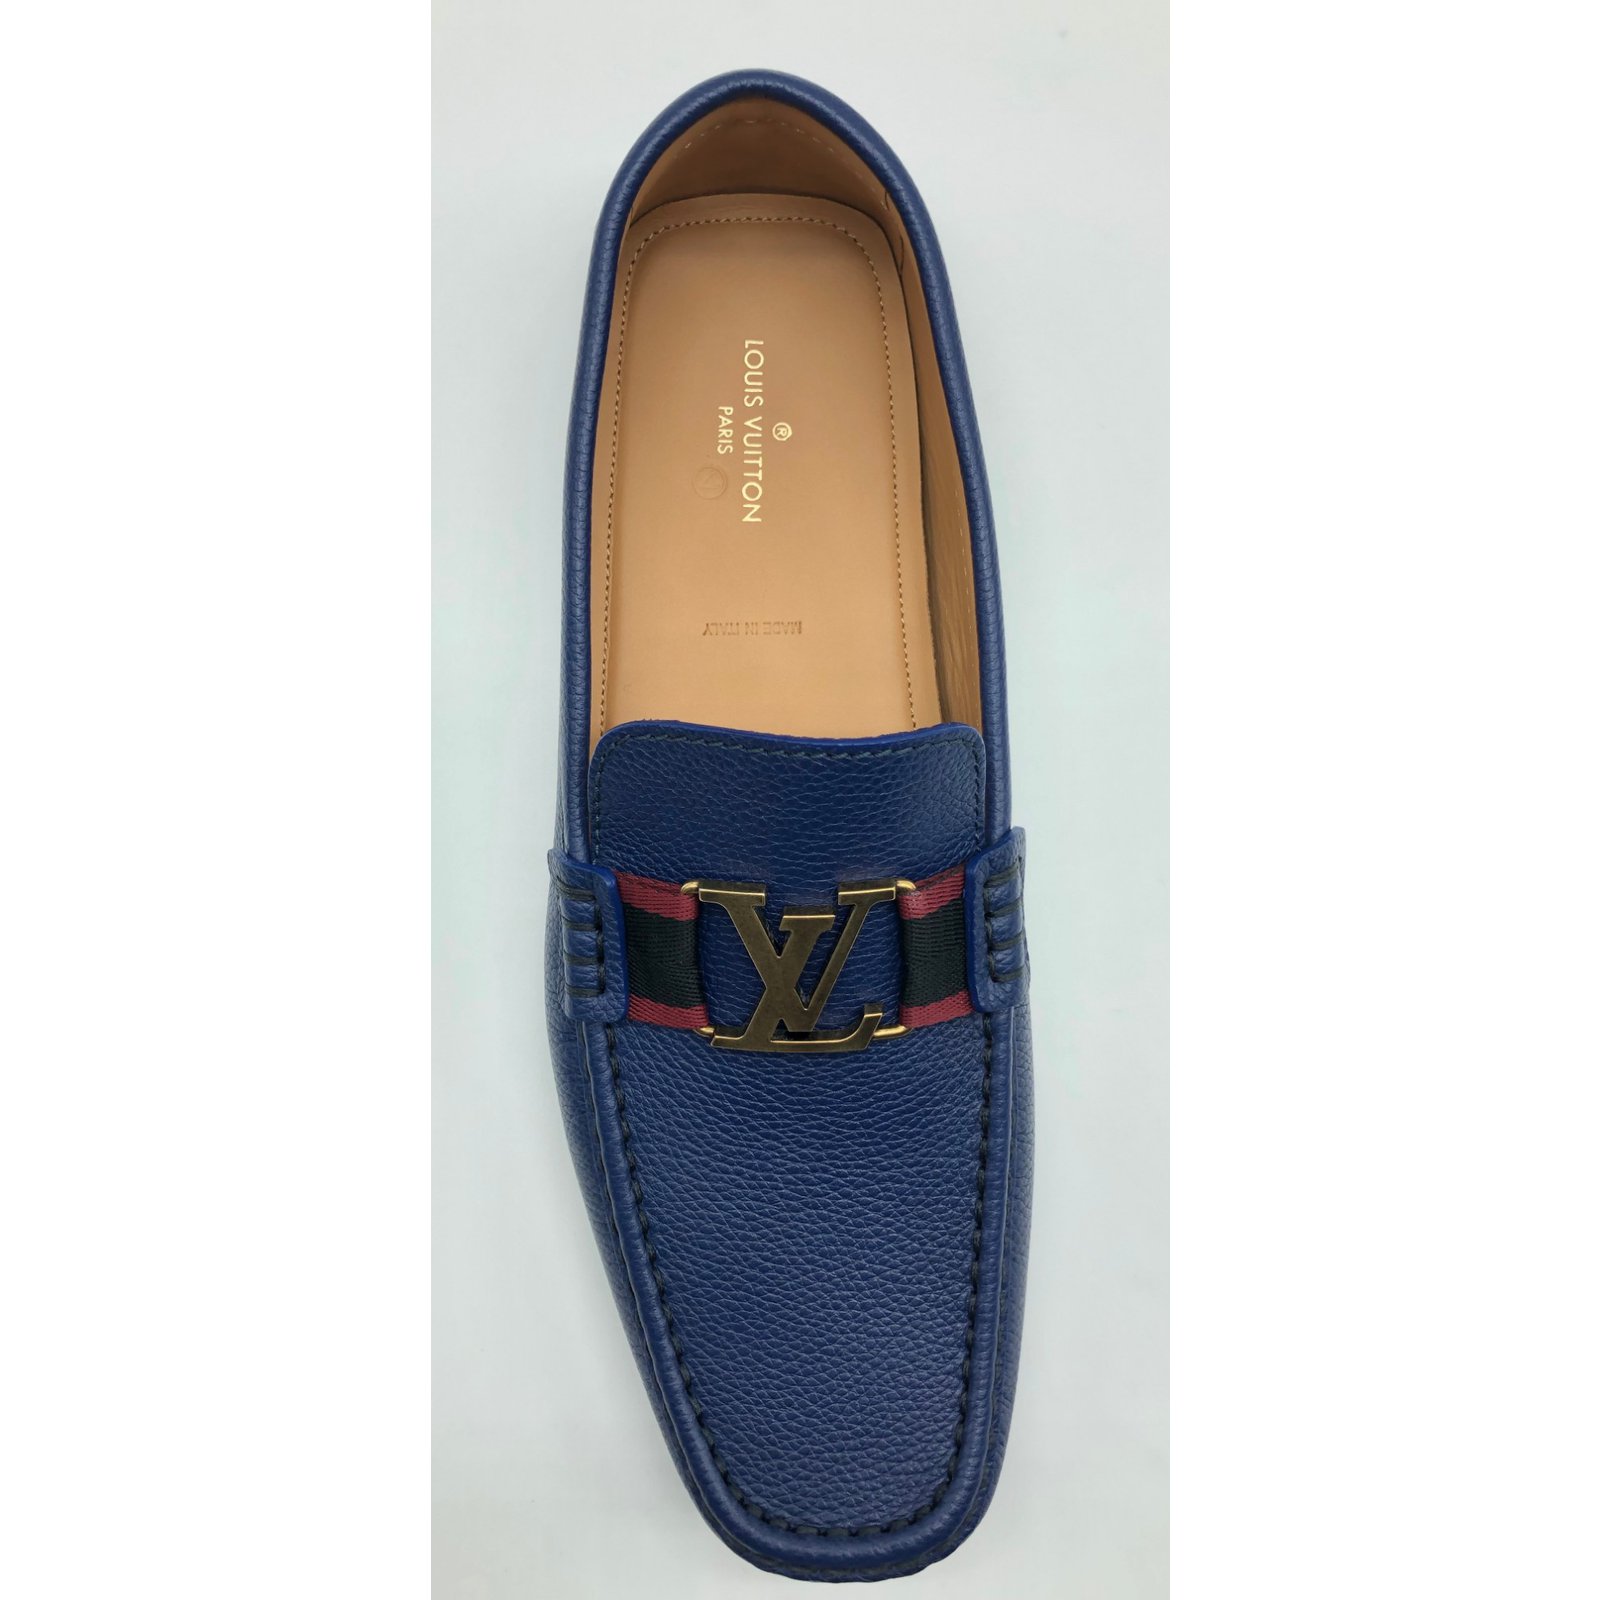 Authentic Louis Vuitton Monte Carlo Blue Denim Mens Loafer US9 EU42 LV/UK8